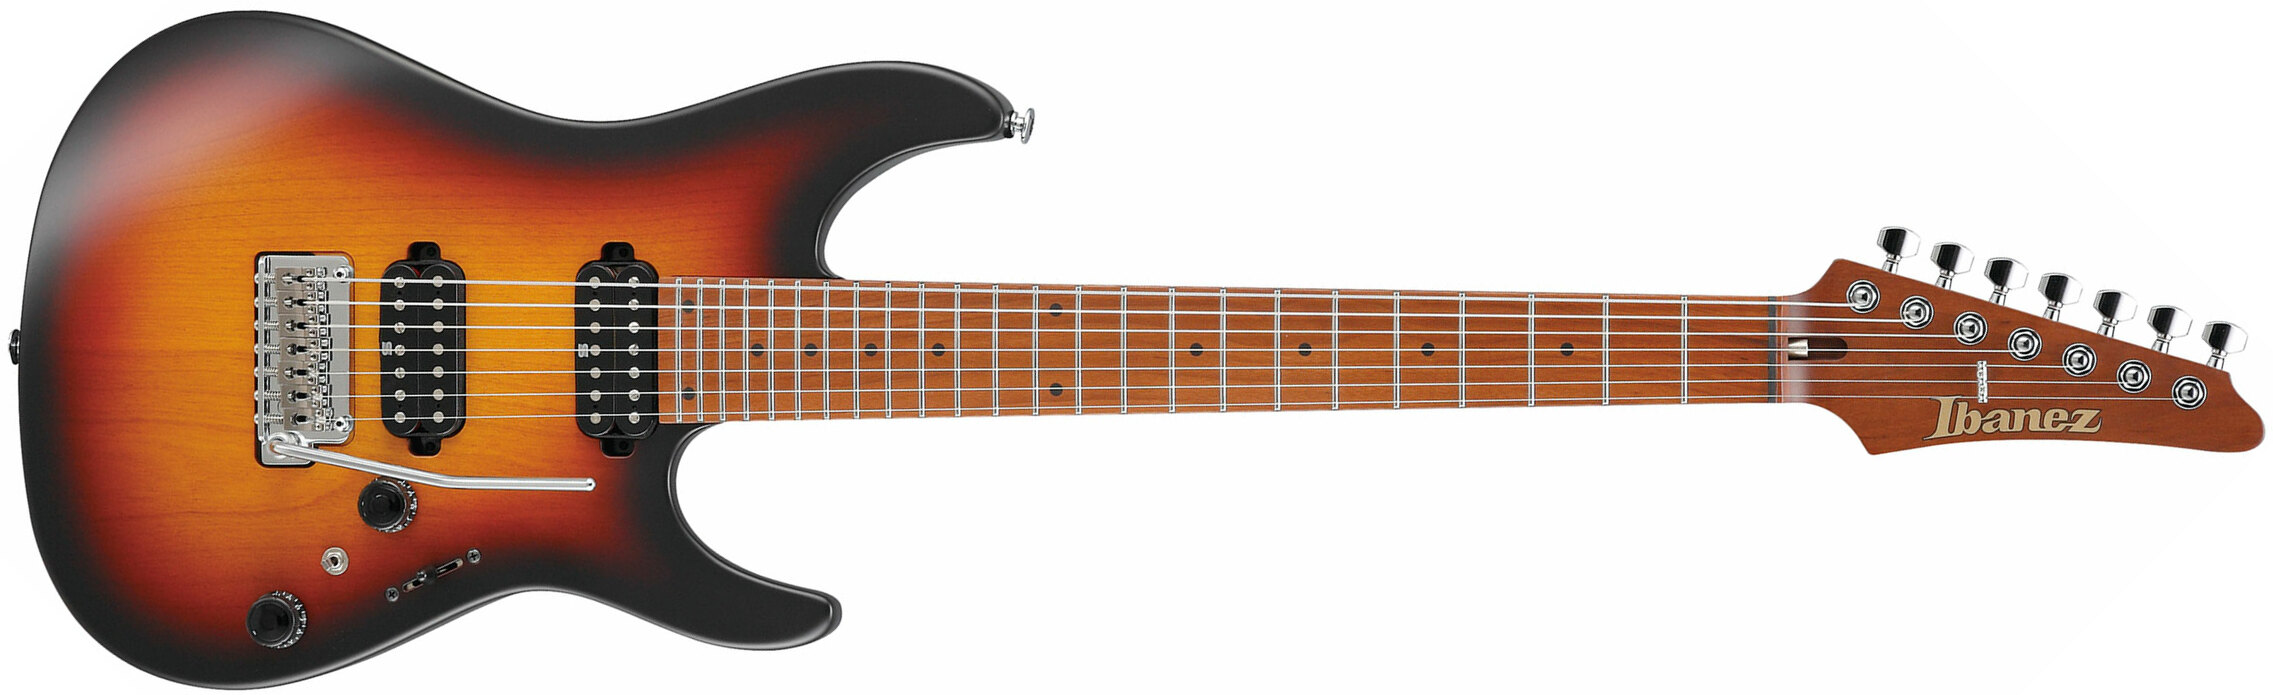 Ibanez Az24027 Tff Prestige Jap 7c Hh Seymour Duncan Trem Mn - Tri-fade Burst - 7-saitige E-Gitarre - Main picture